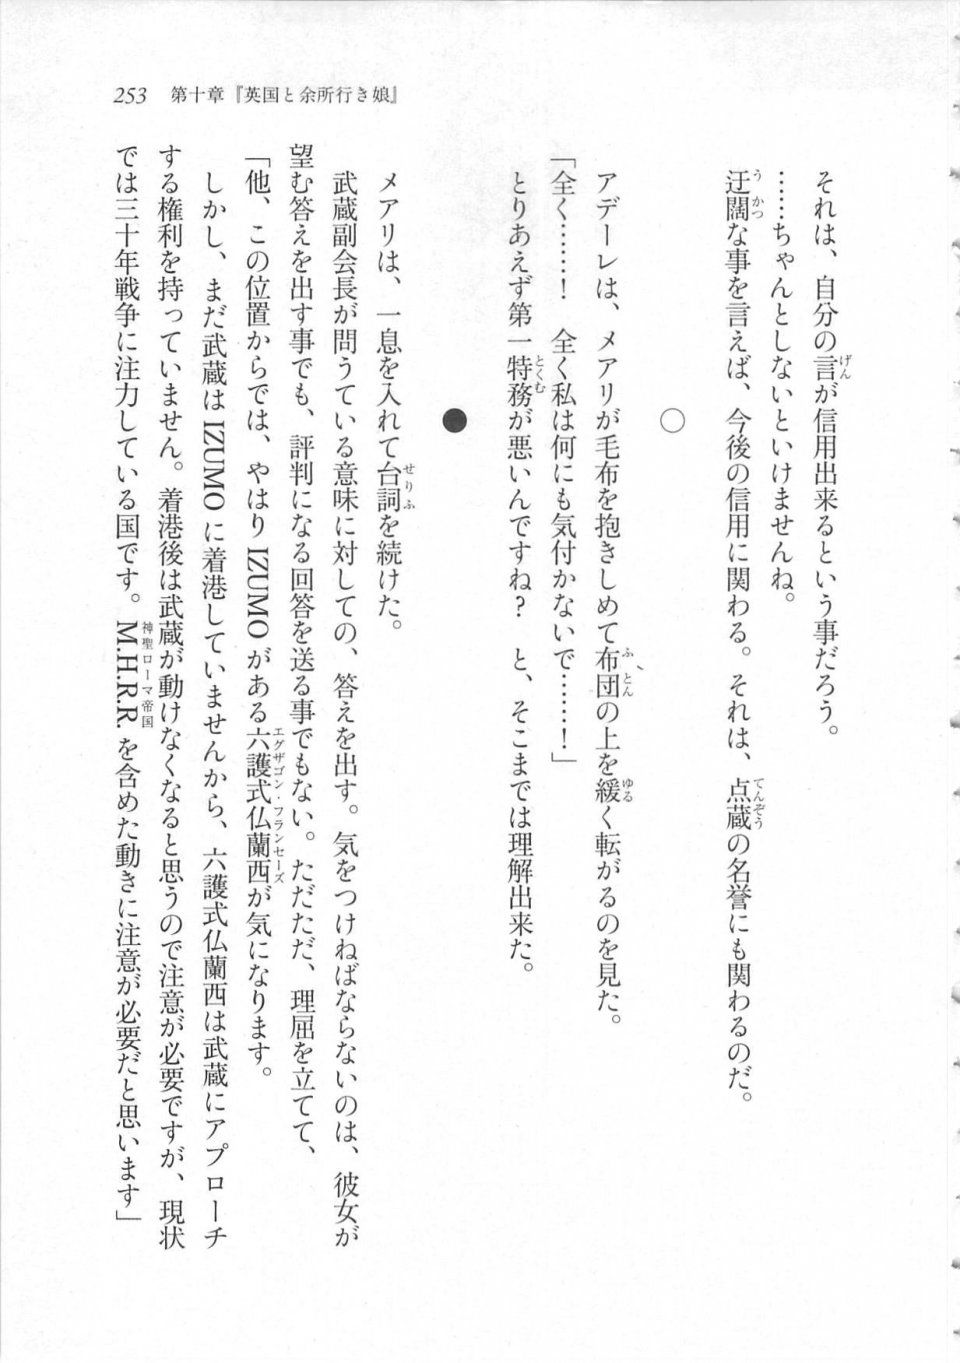 Kyoukai Senjou no Horizon LN Sidestory Vol 3 - Photo #257